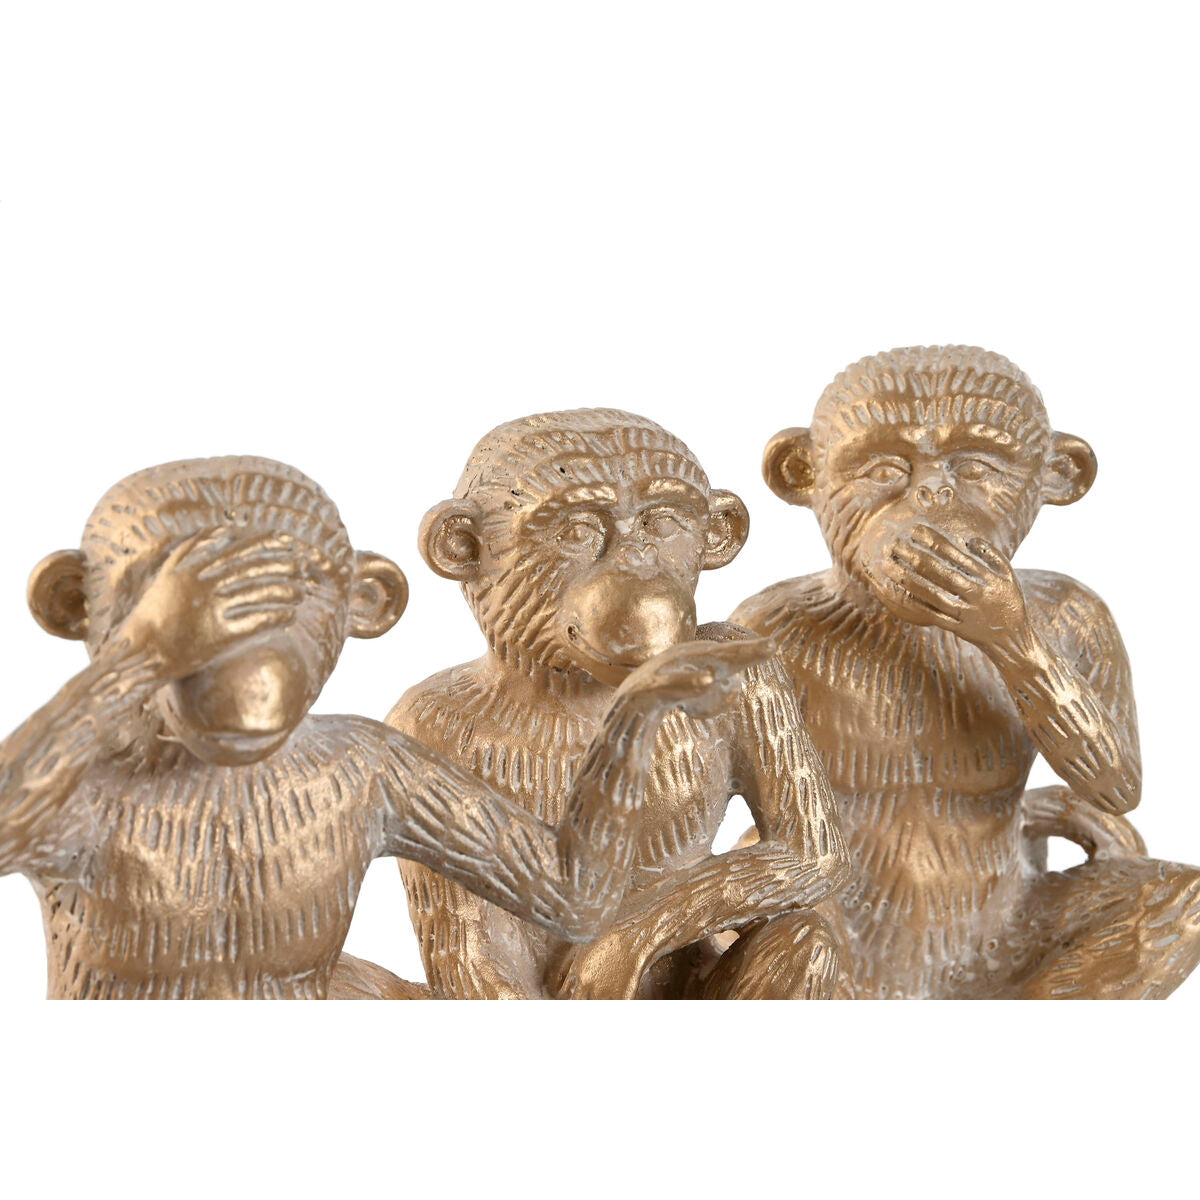 Decorative Figure Home ESPRIT Golden Monkey Tropical 14 x 10 x 14 cm (3 Units)